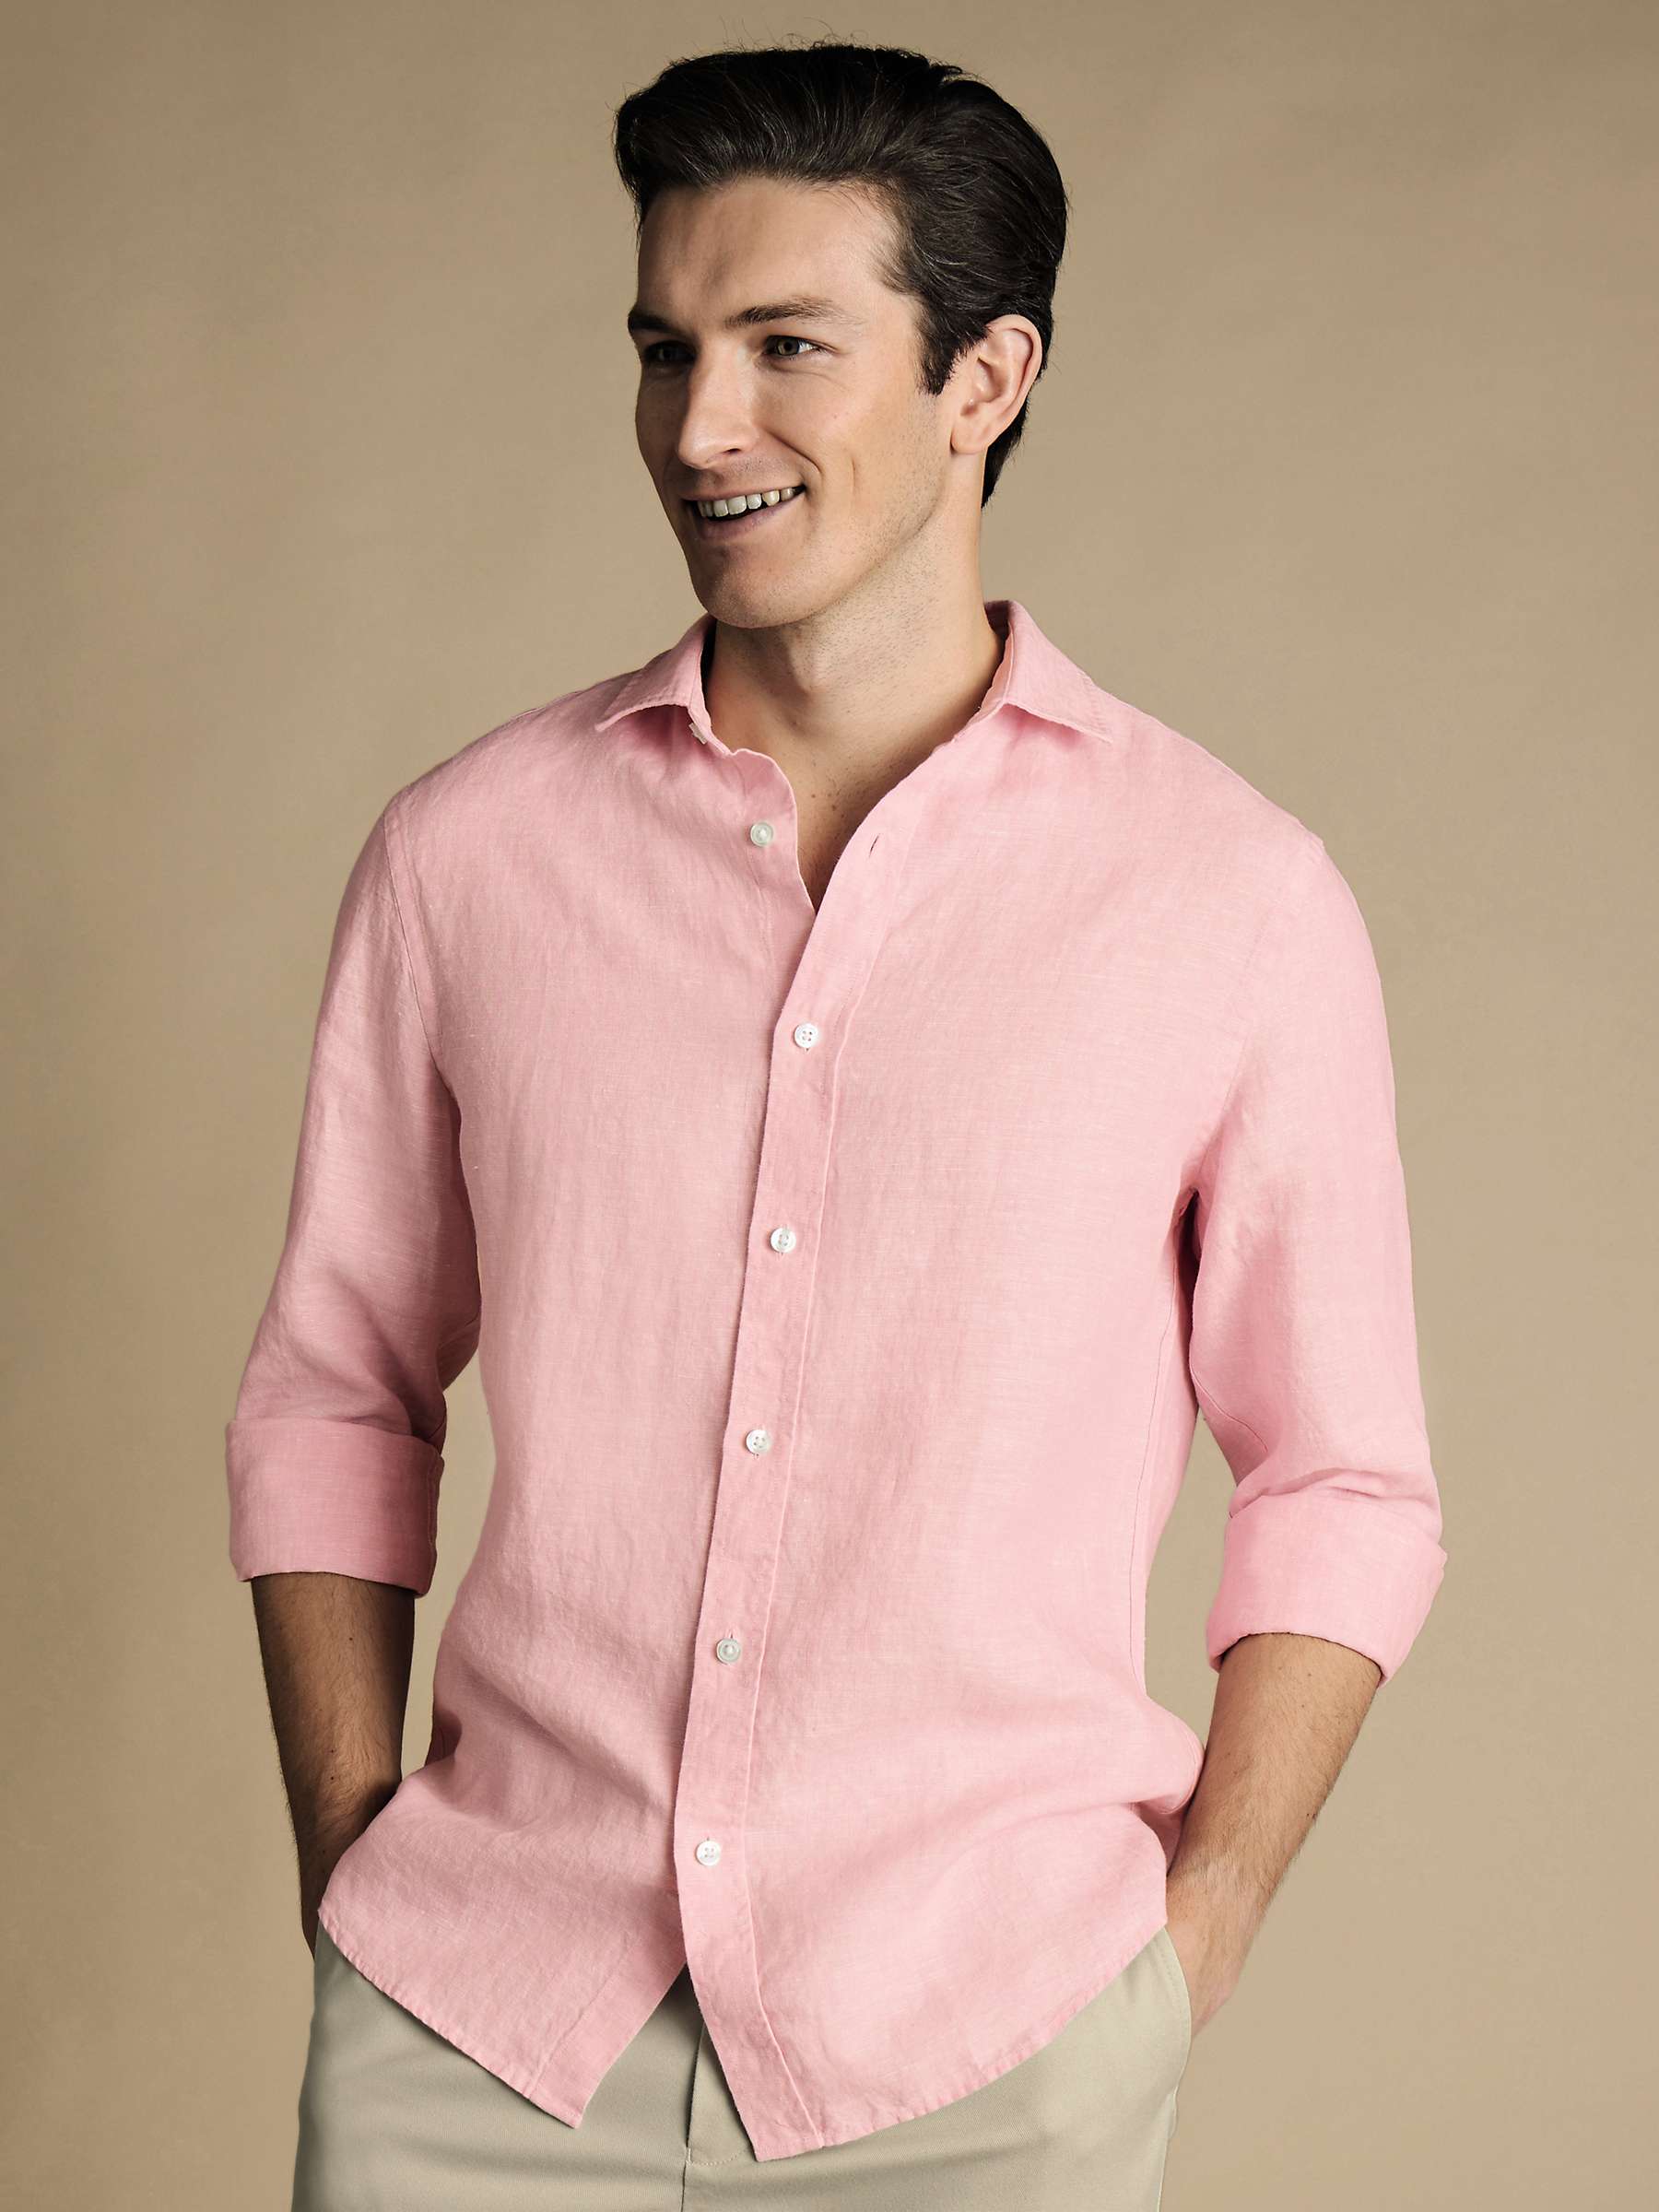 Buy Charles Tyrwhitt Linen Short Sleeve Slim Fit Shirt Online at johnlewis.com